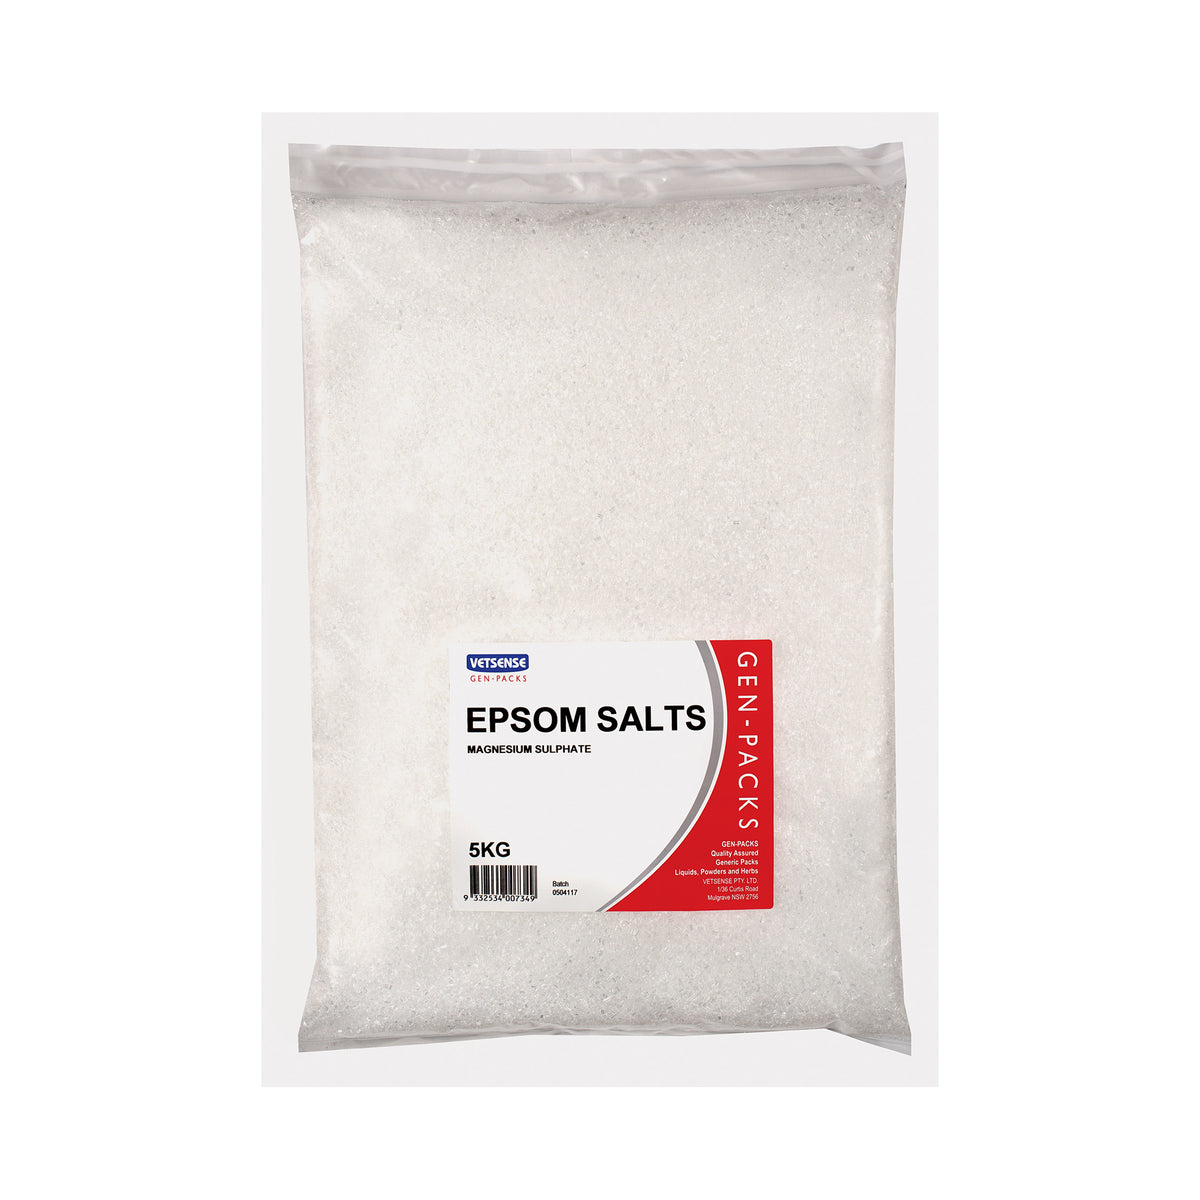 Vetsense Gen Packs Epsom Salts